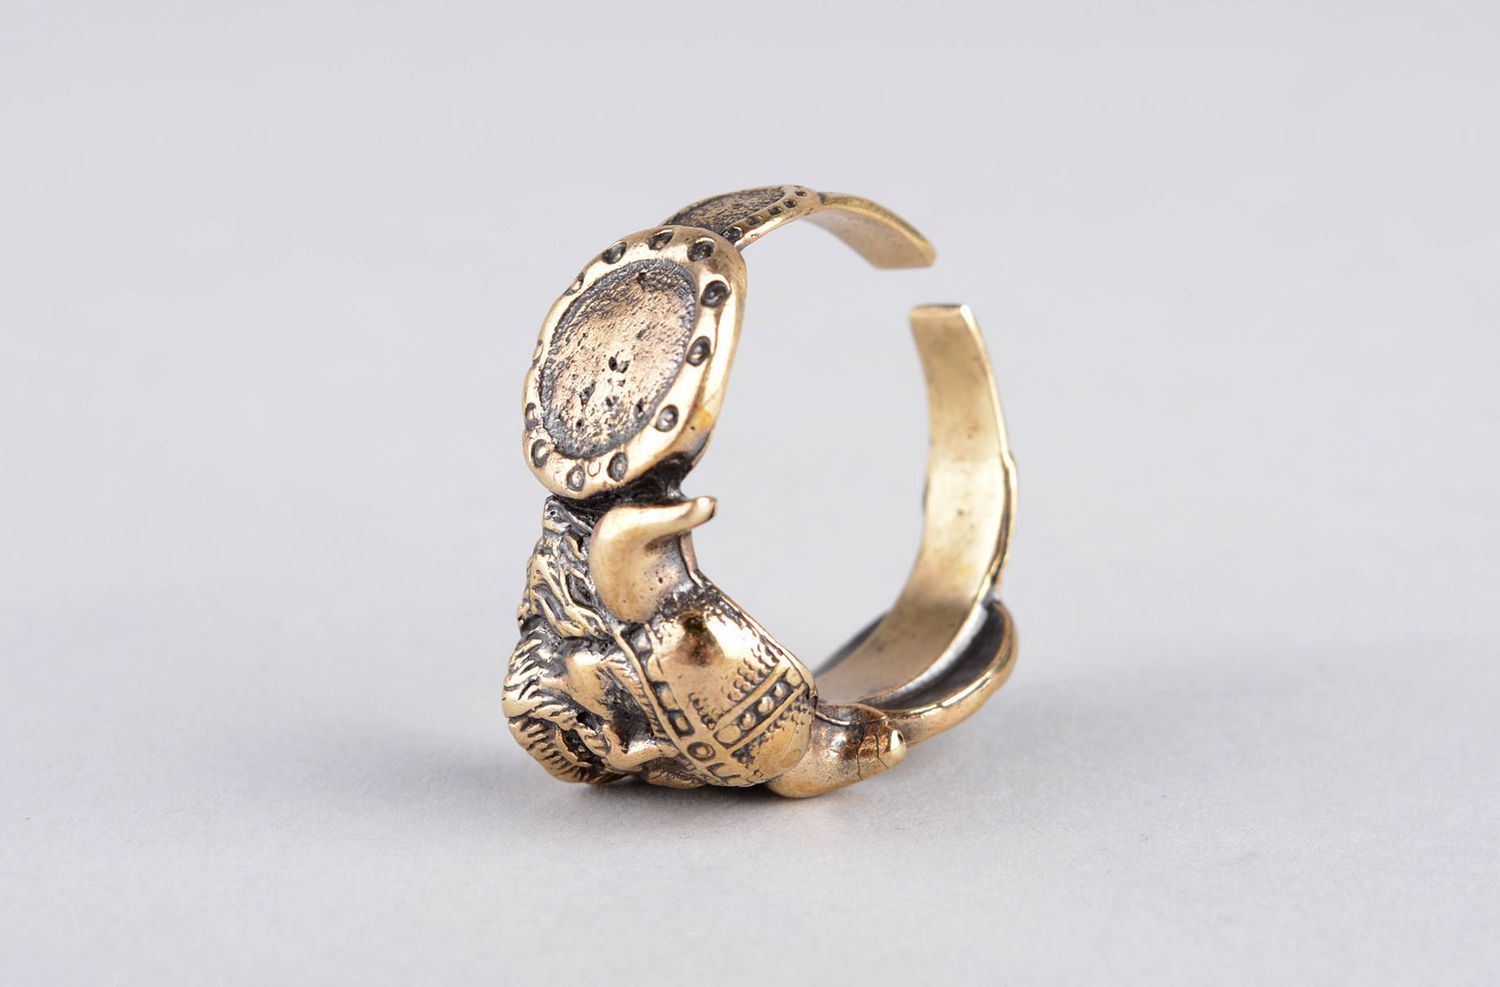 Мужское кольцо ручной работы красивое кольцо мужской аксессуар крупный Викинг фото 9